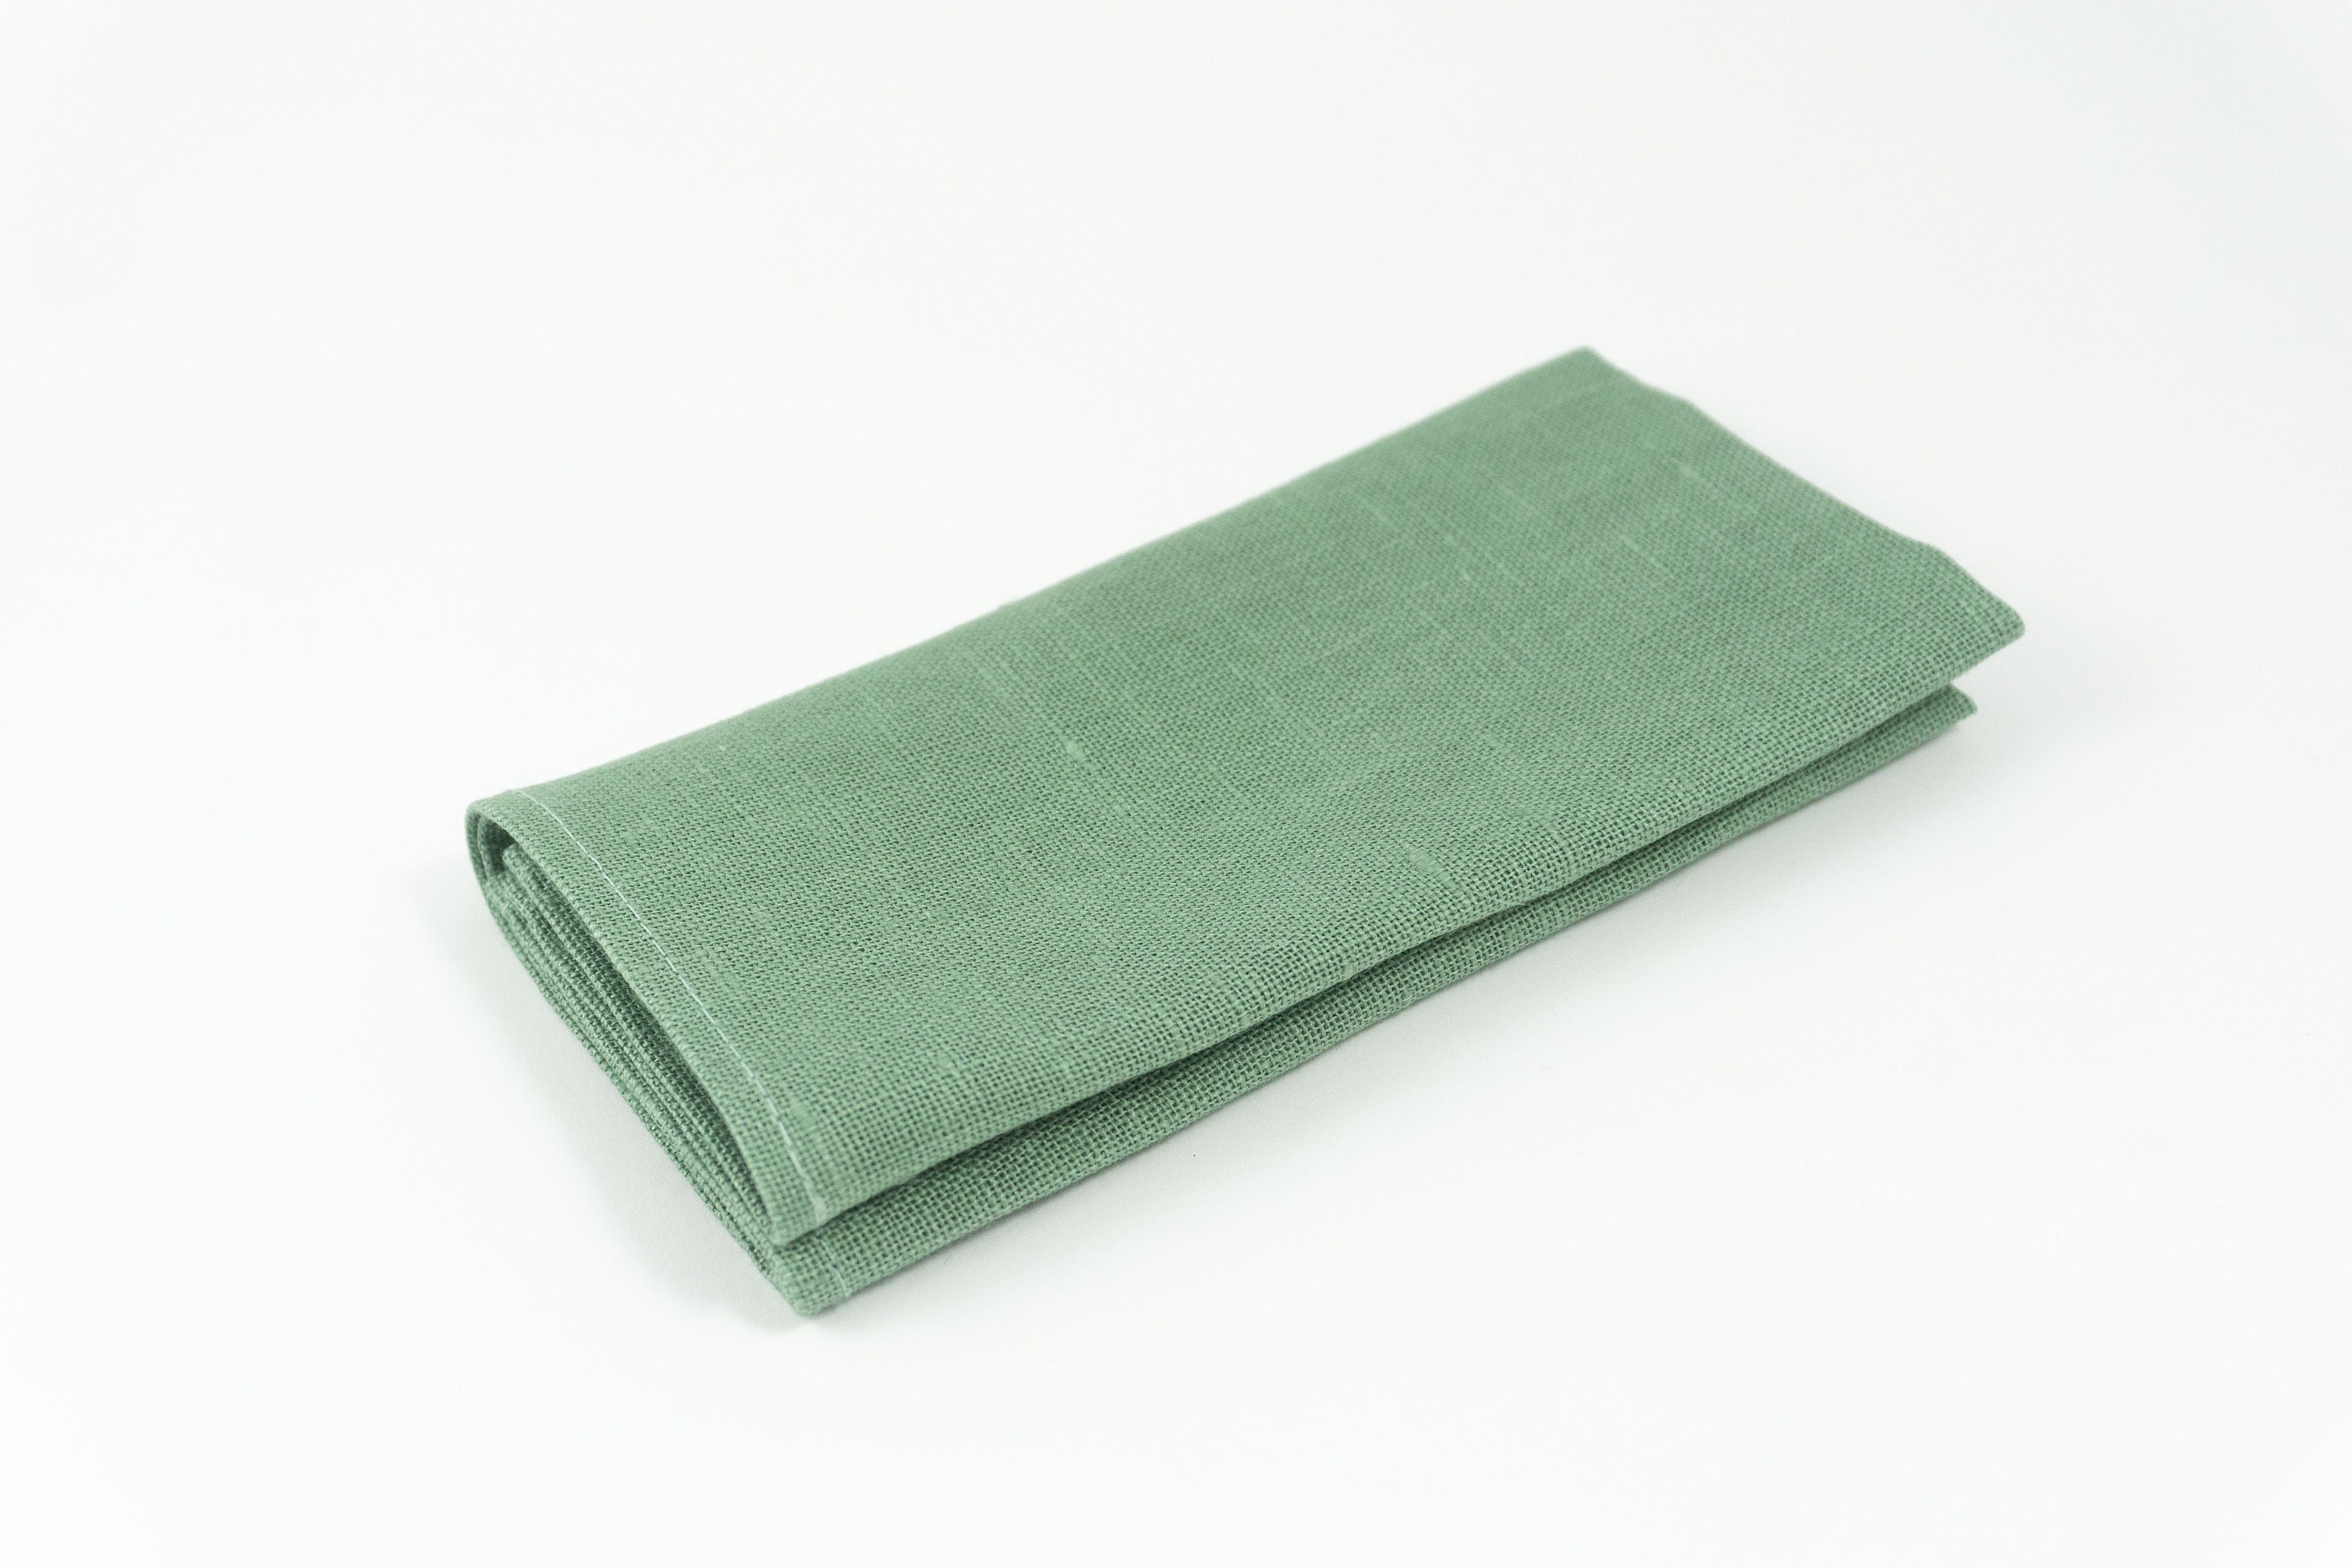 Sage Green Color Linen Pocket Square or Handkerchief for Men - Etsy UK